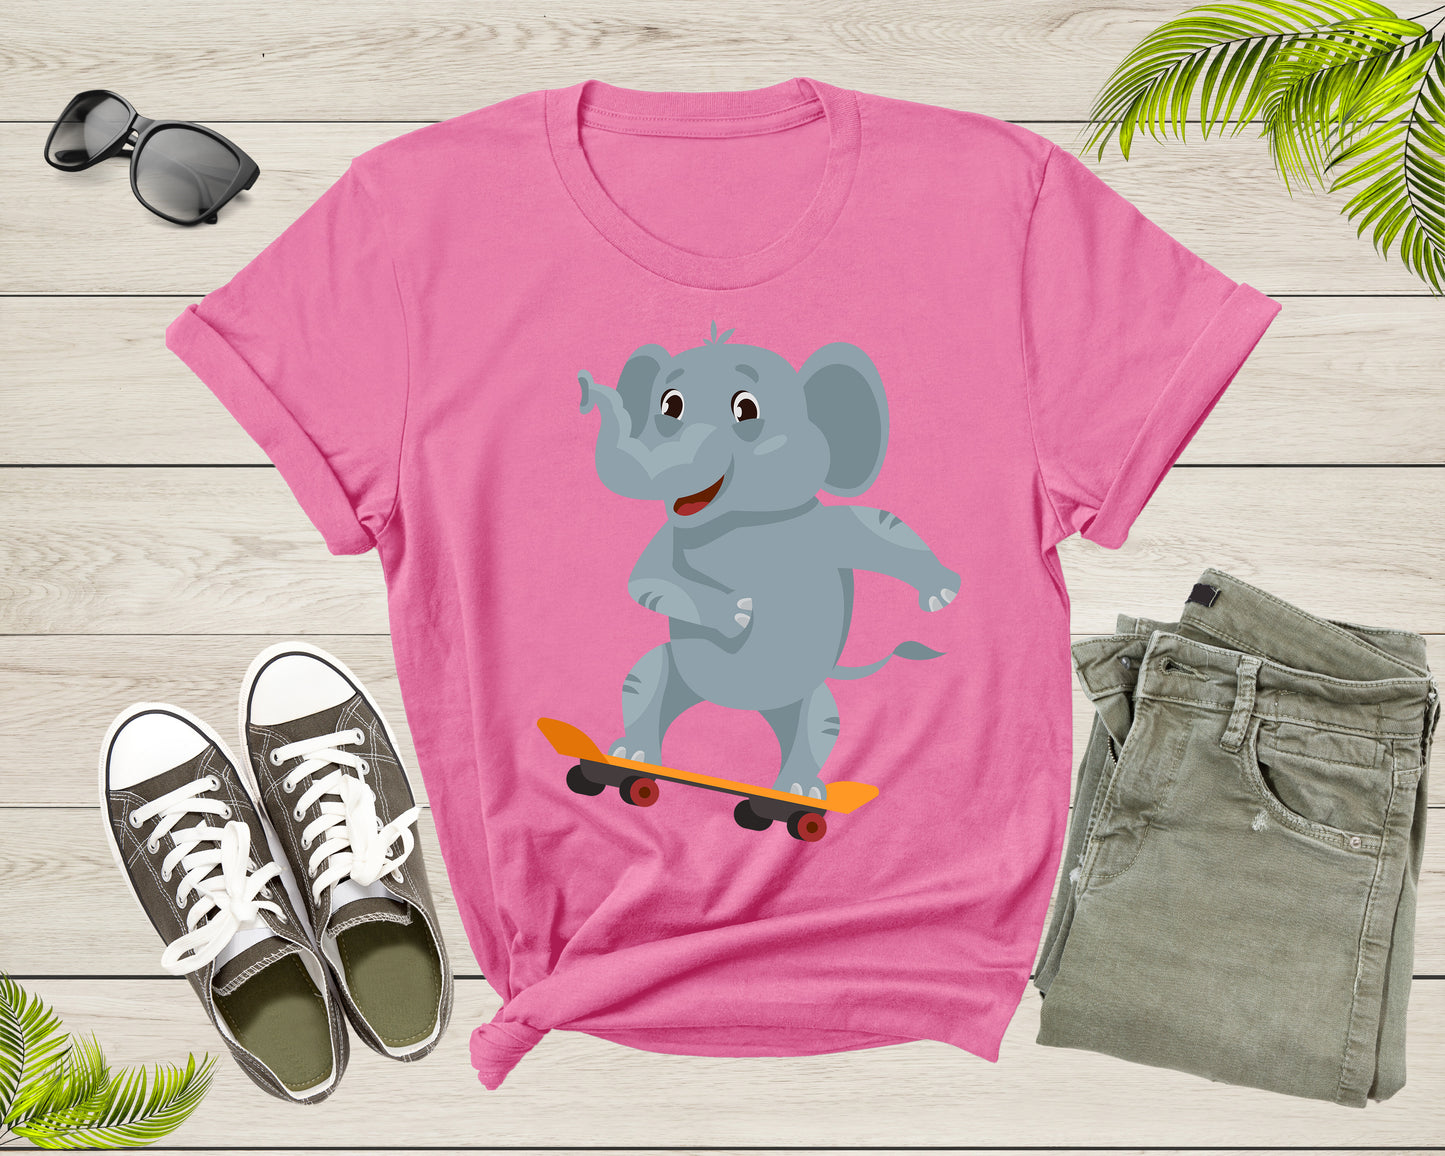 Cute Skateboarding Big Elephant Animal for Men Women Boys Girls T-Shirt Men Skateboarder Elephant Lover Gift T Shirt Graphic Tshirt